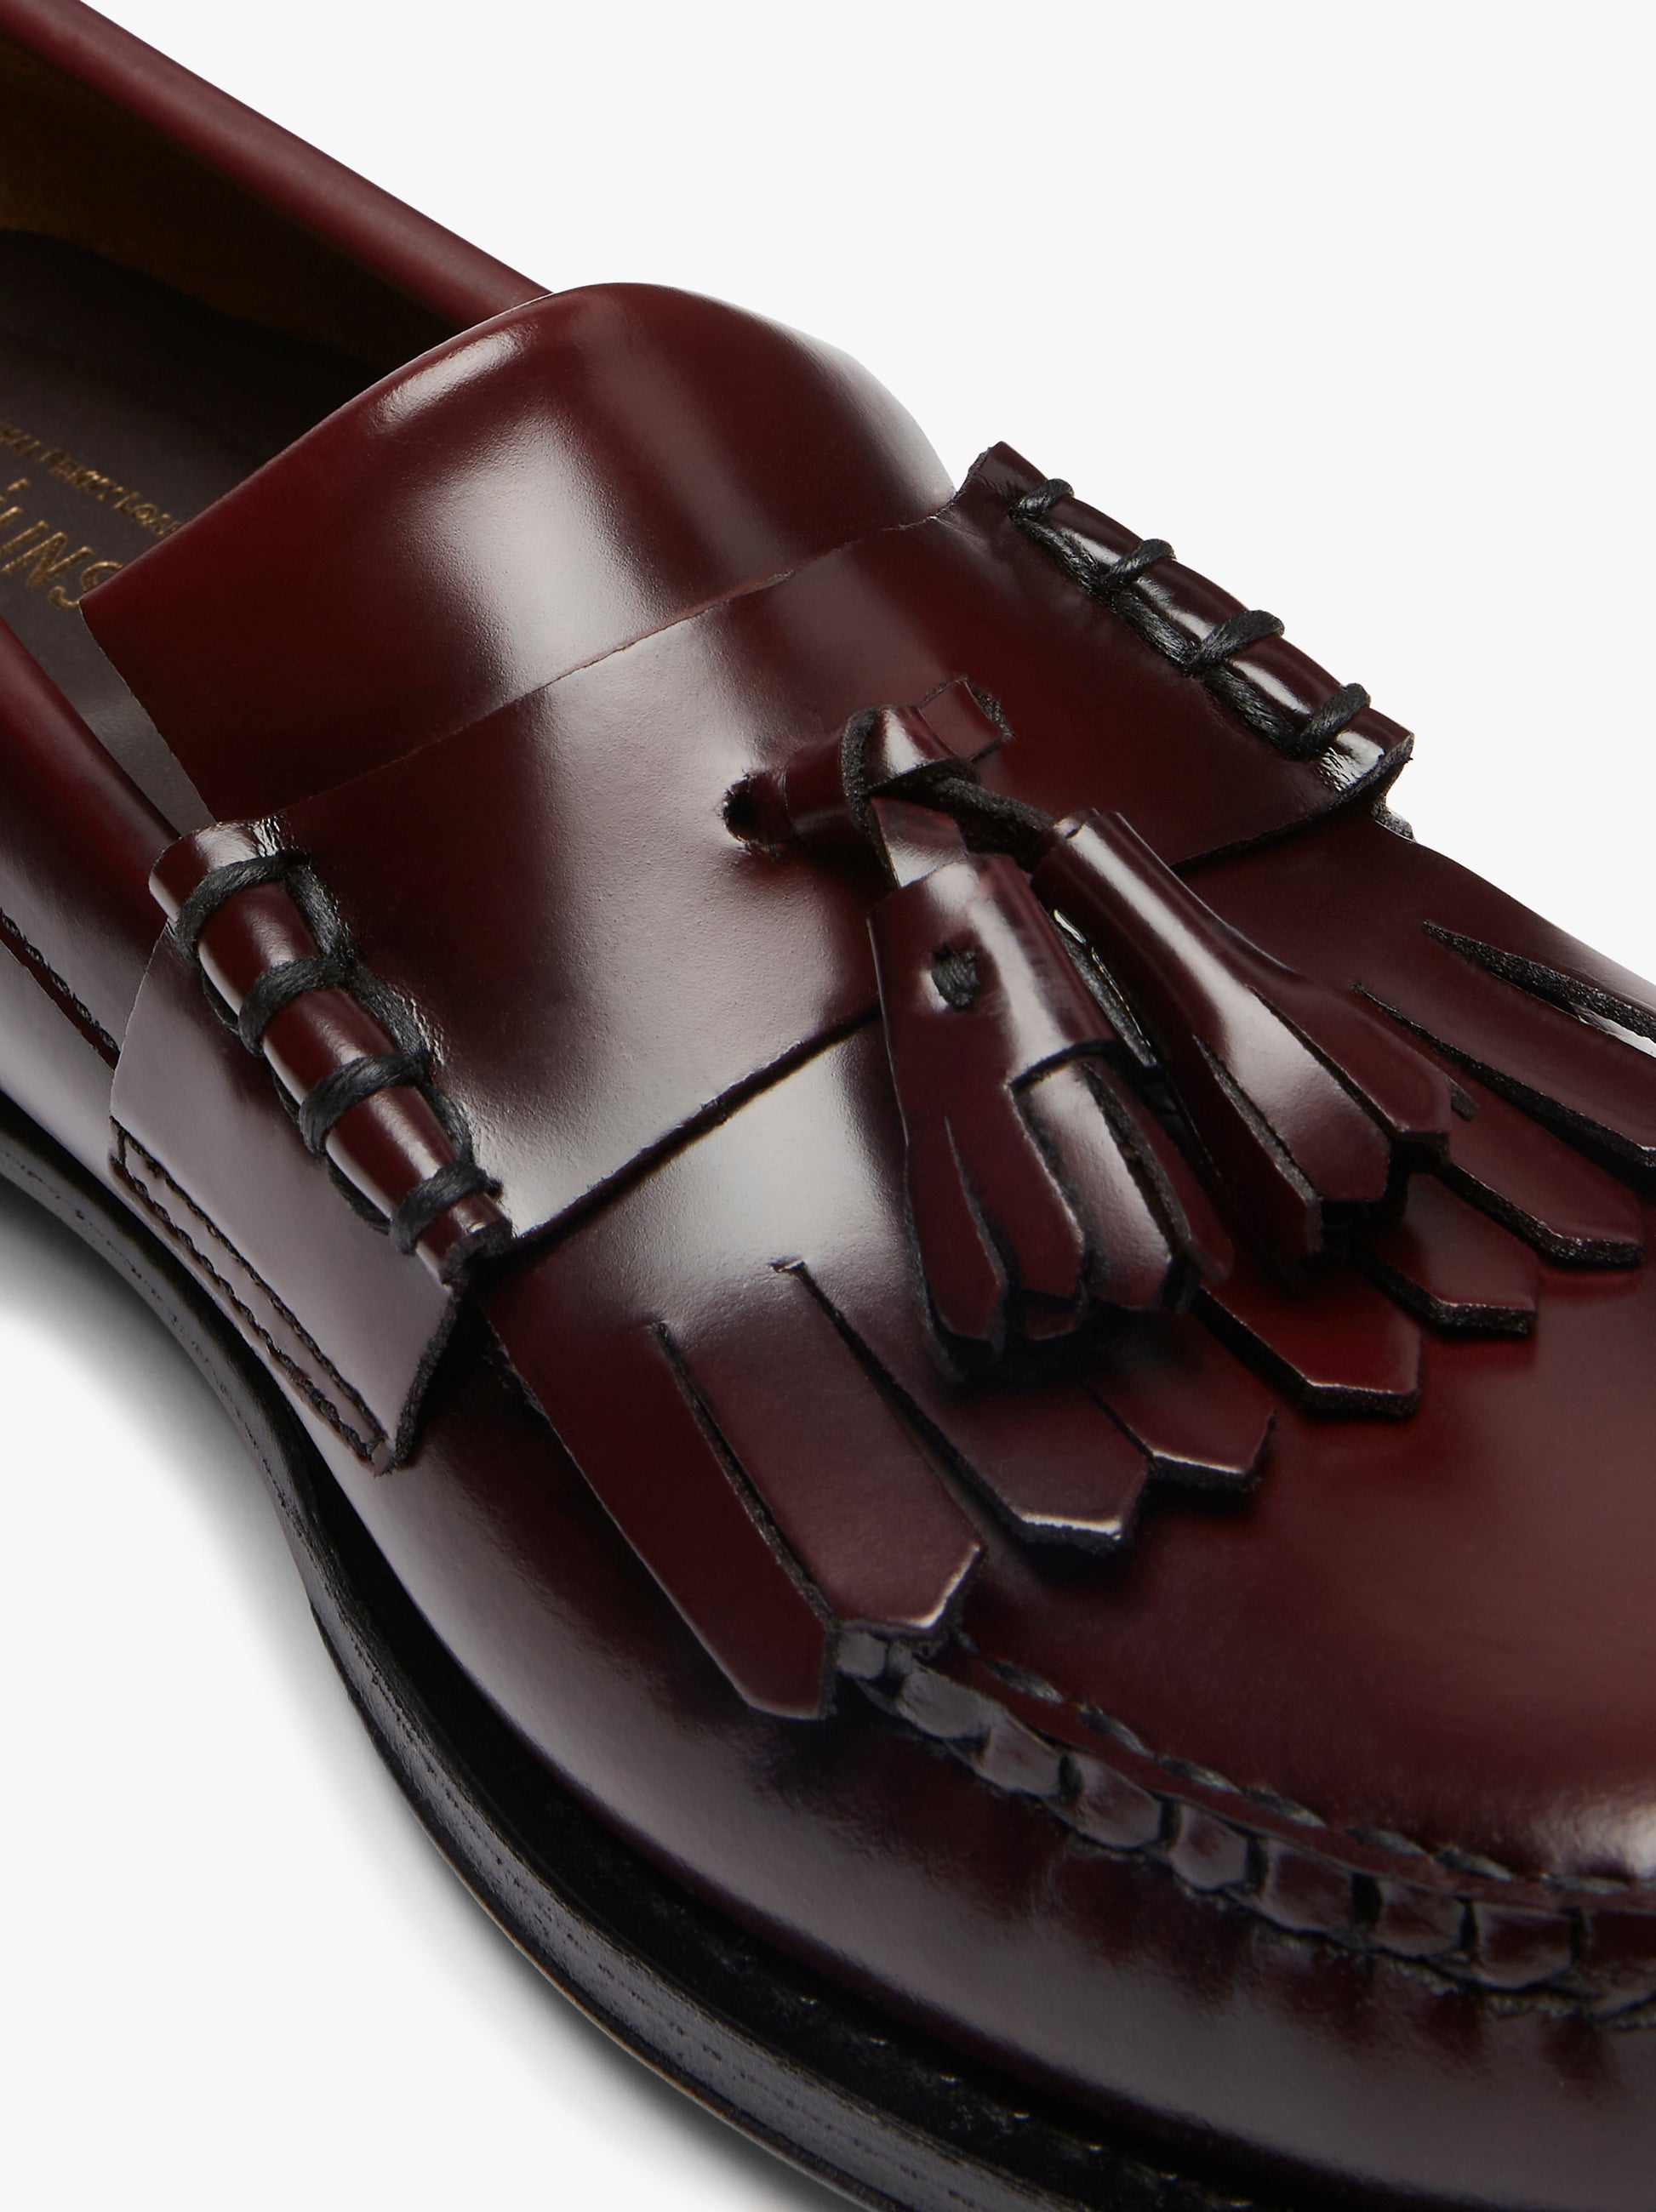 Kiltie Shoes | Mens Kiltie Loafers – G.H.BASS – G.H.BASS 1876